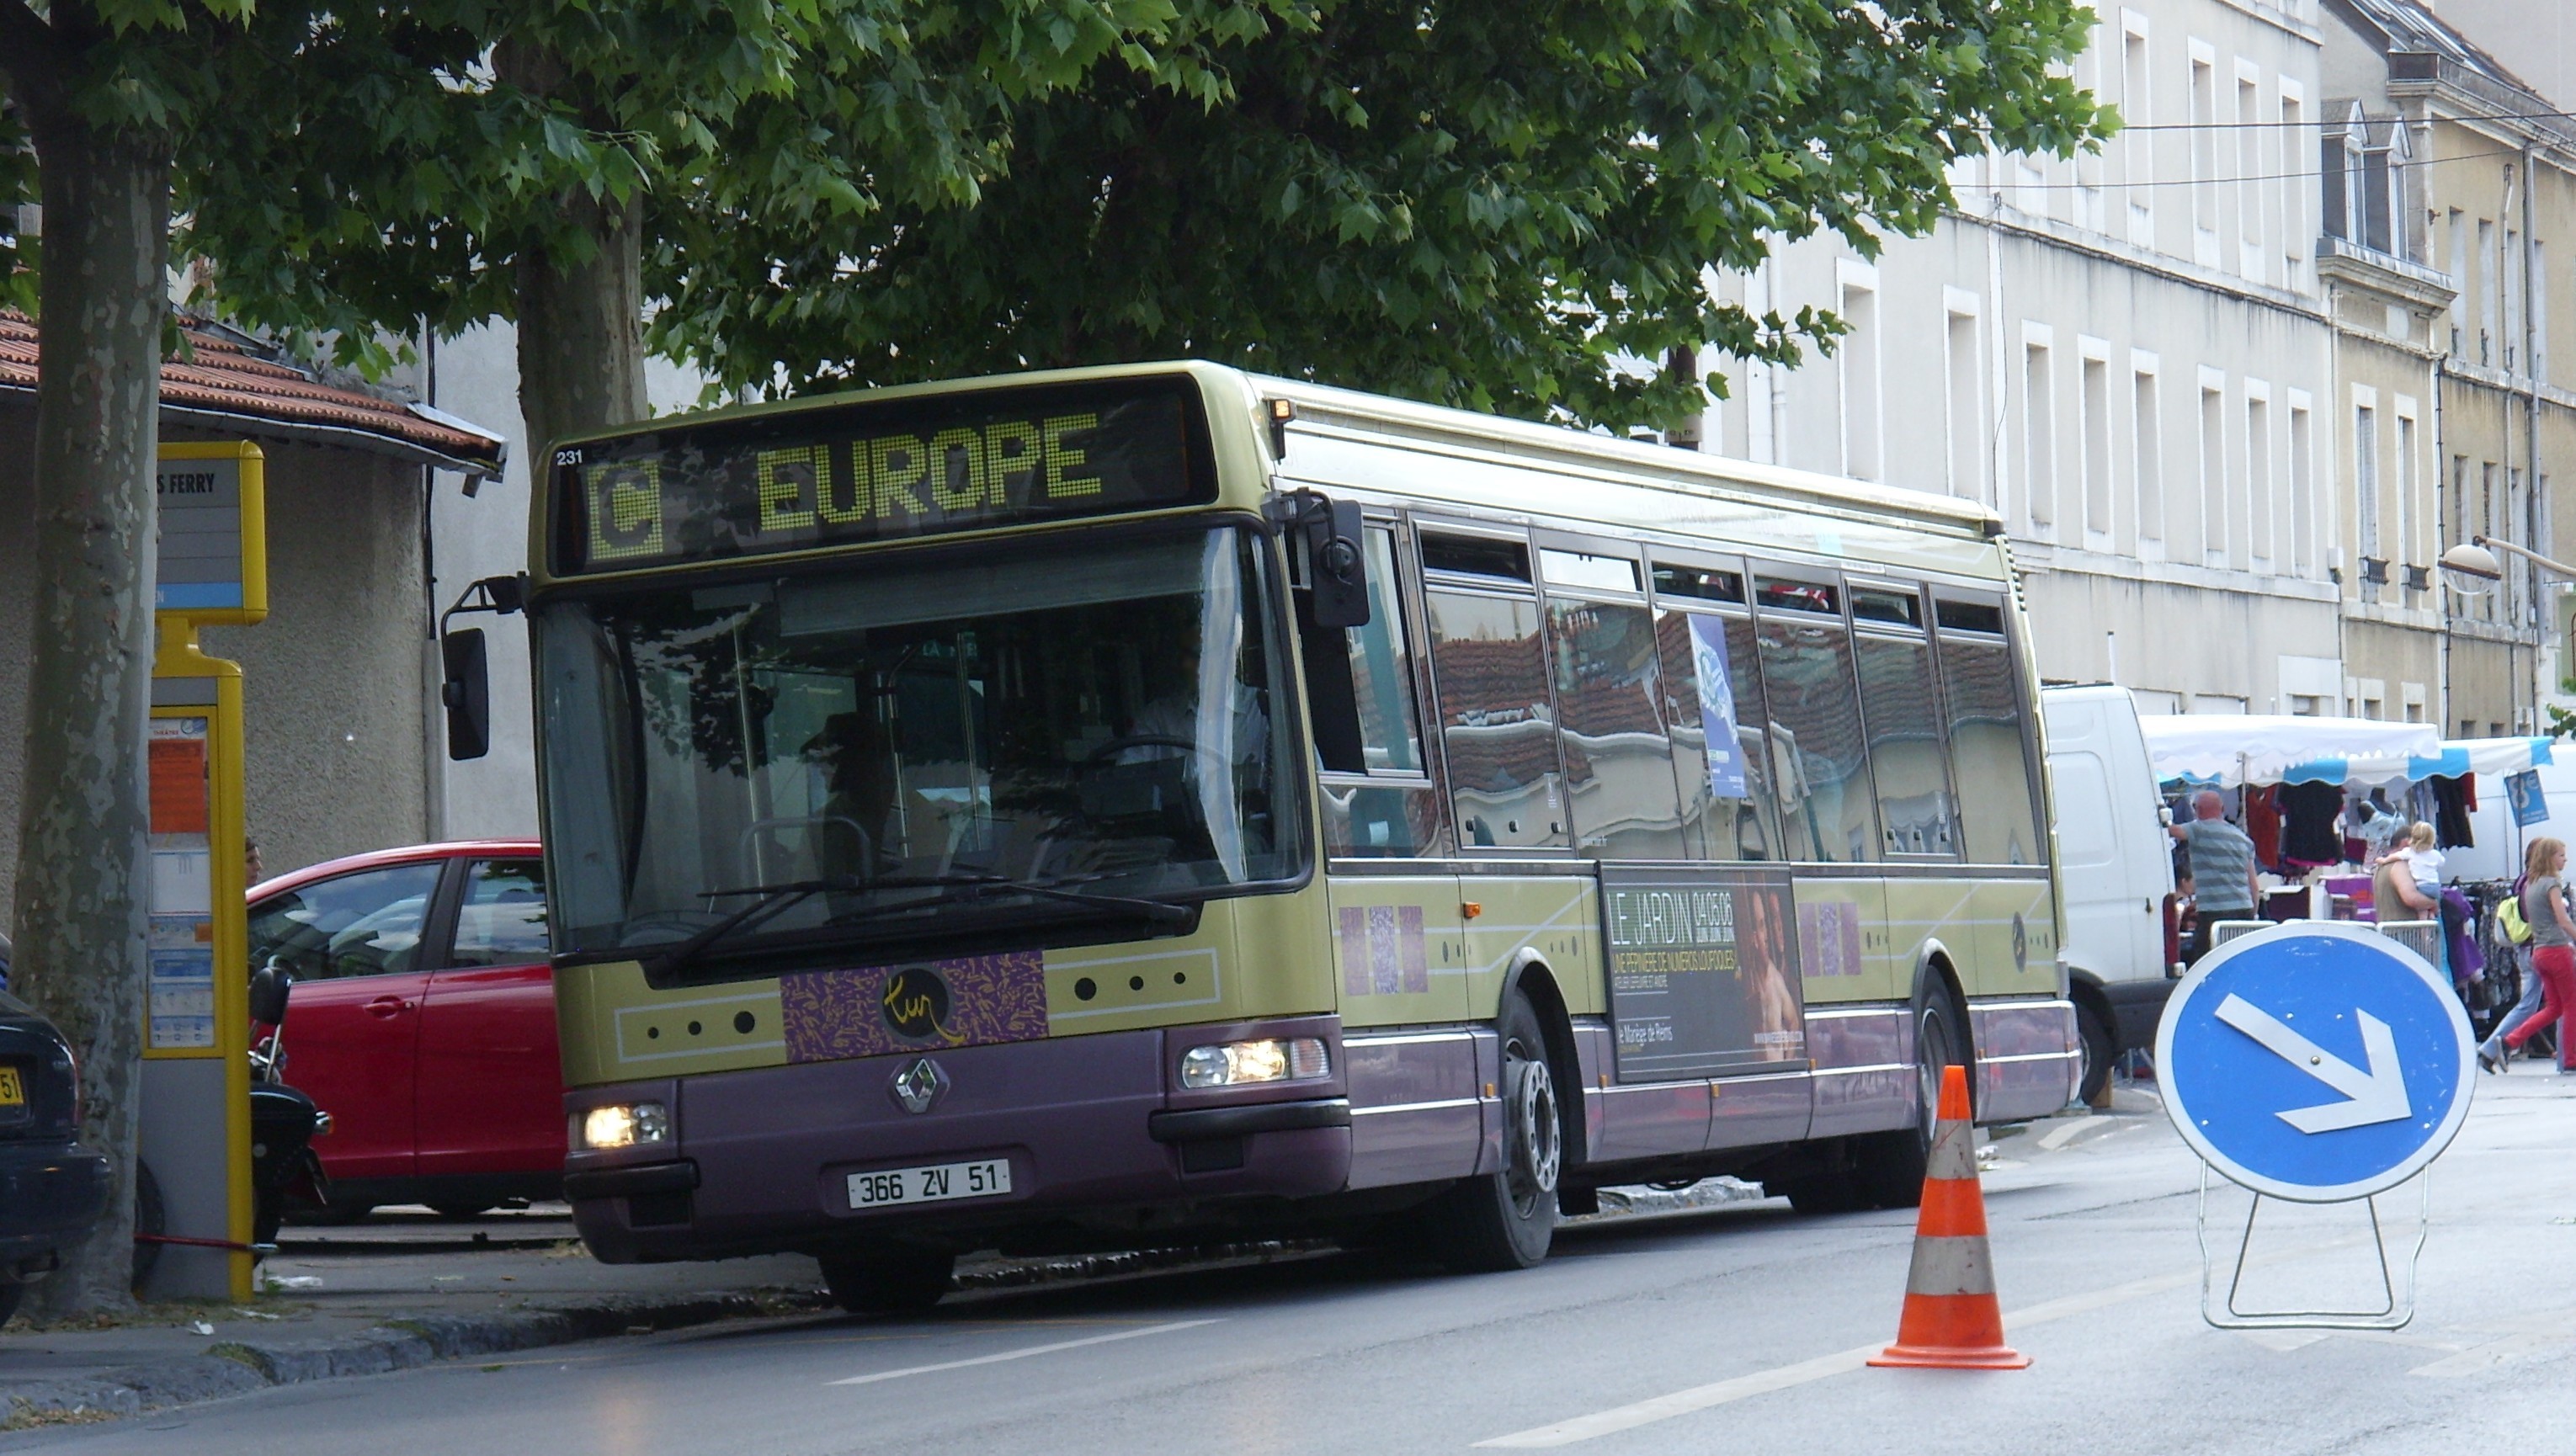 TUR - Irisbus Agora S n°231 - Ligne C, Outdoor, Vehicle, HQ Photo